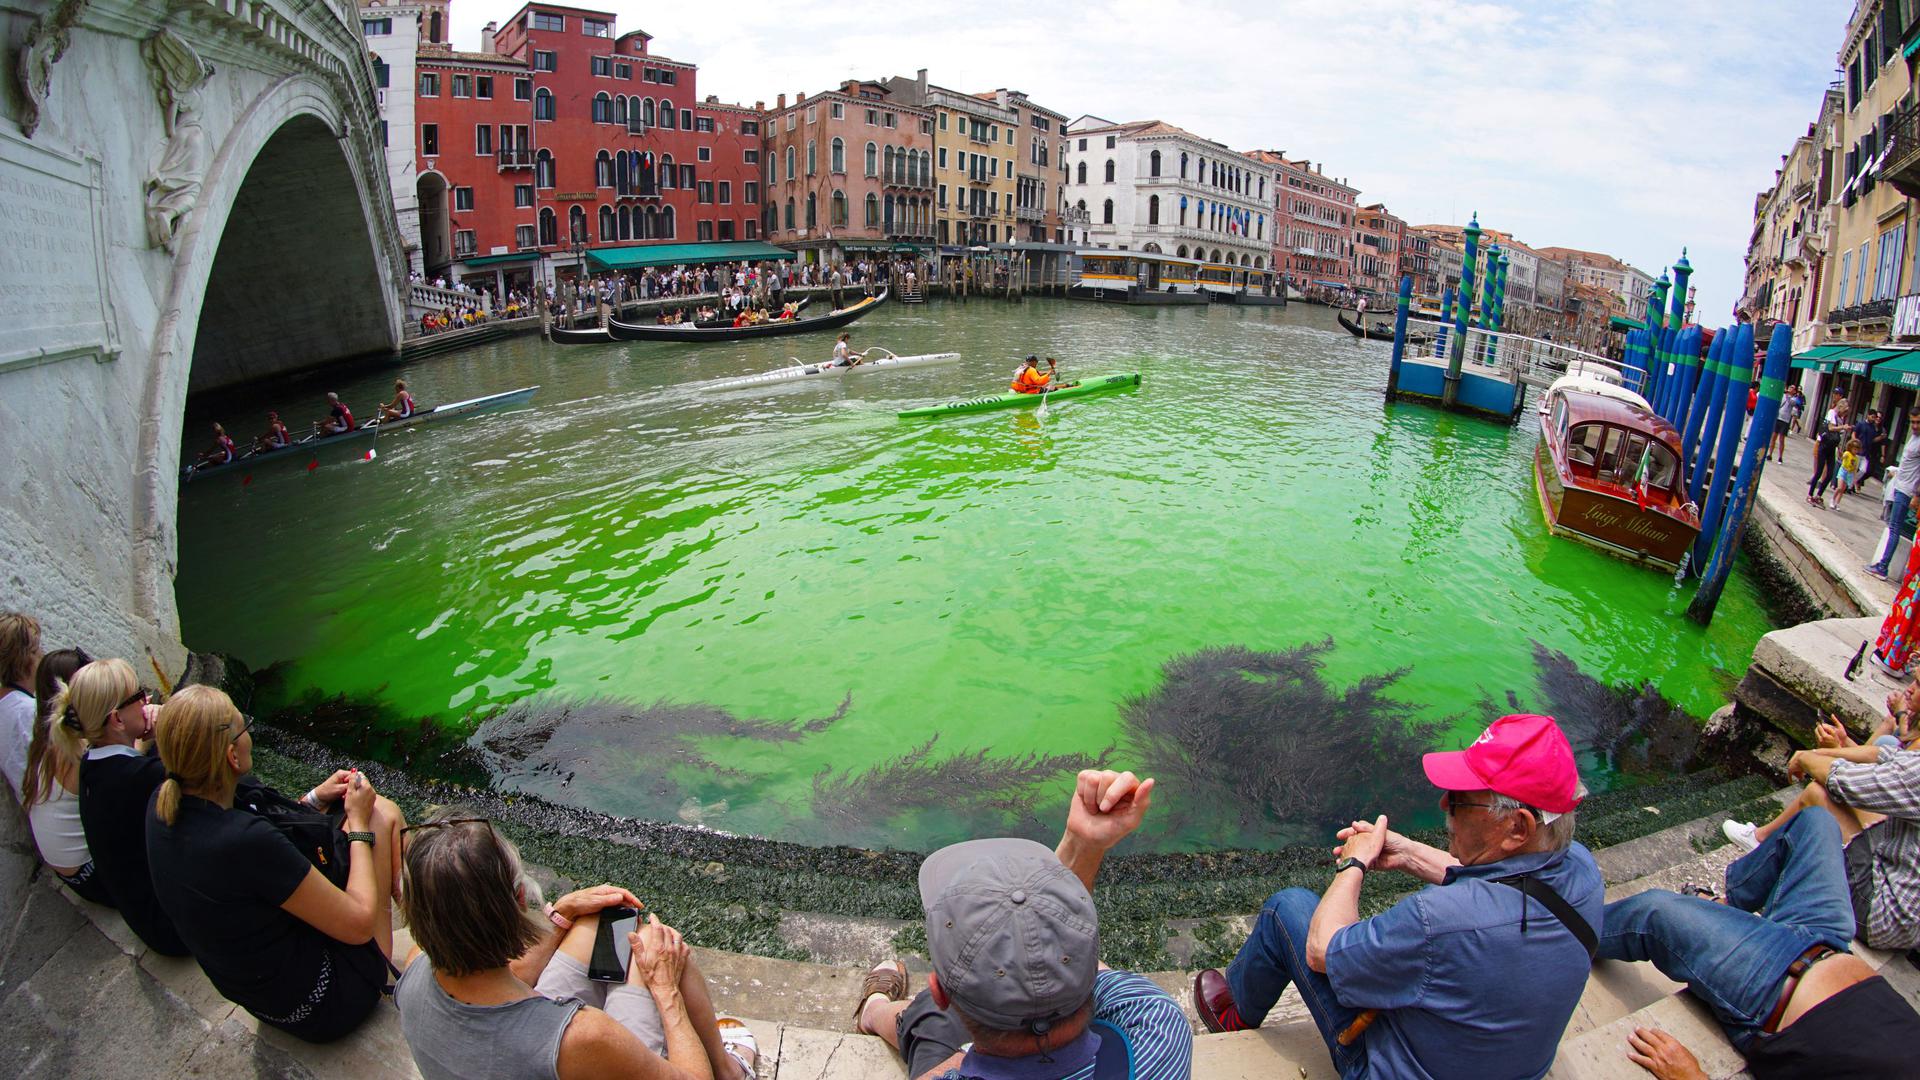 Les passants étaient nombreux à contempler les eaux vertes du Grand Canal de Venise, ce dimanche 28 mai.